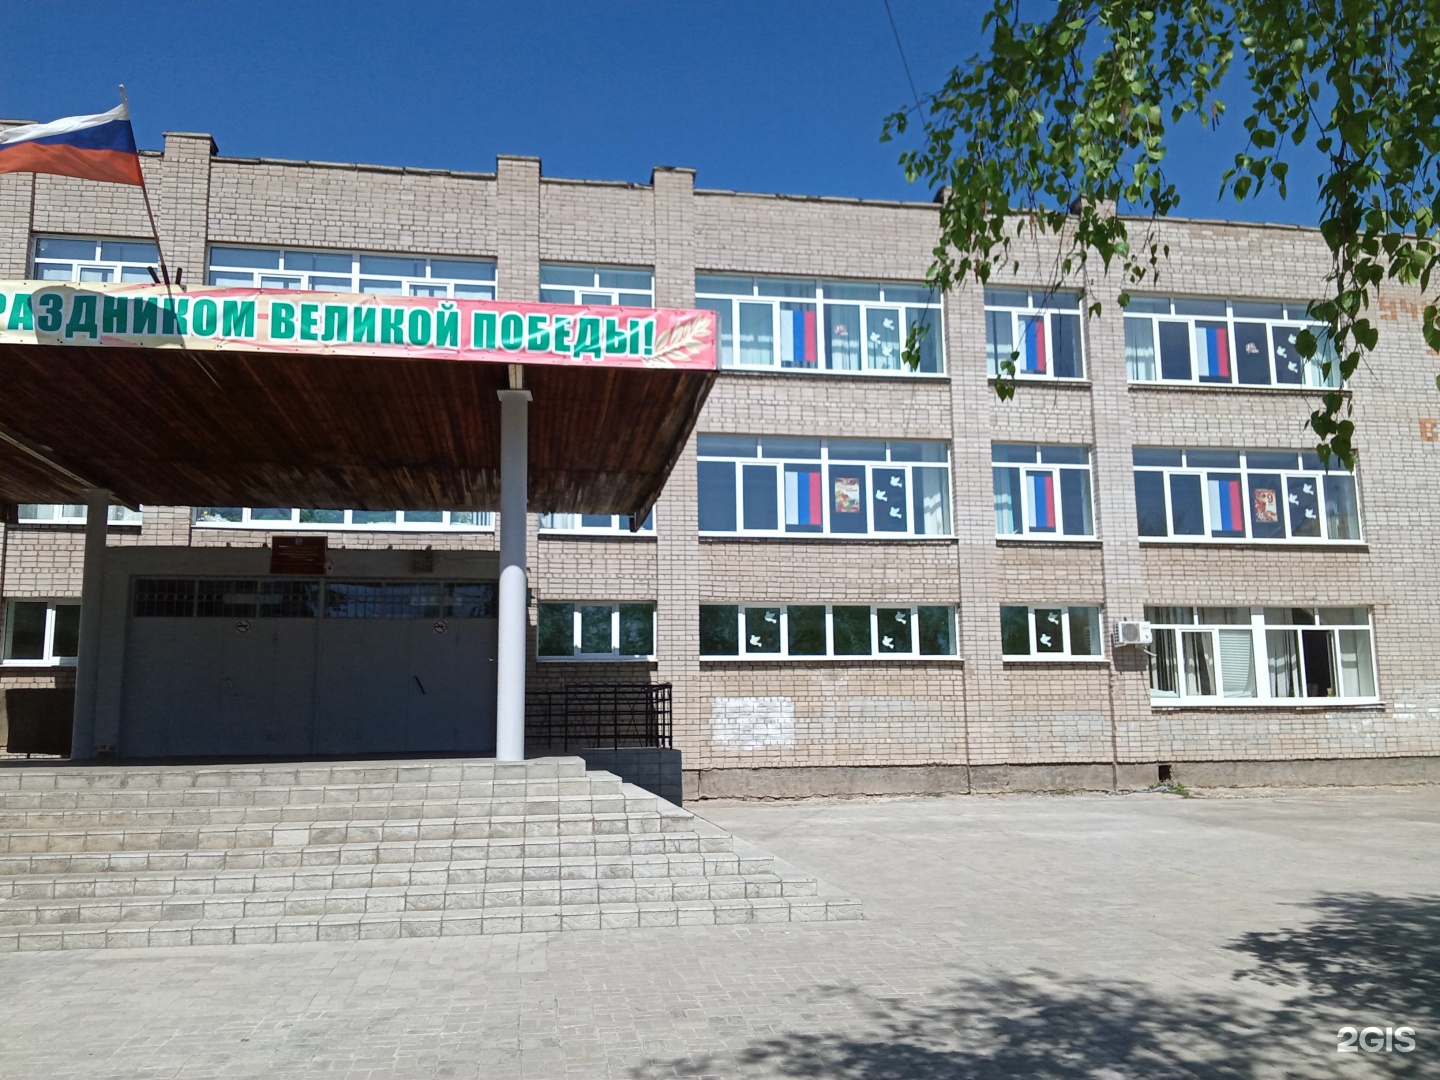 Сайт 165 школы екатеринбурга